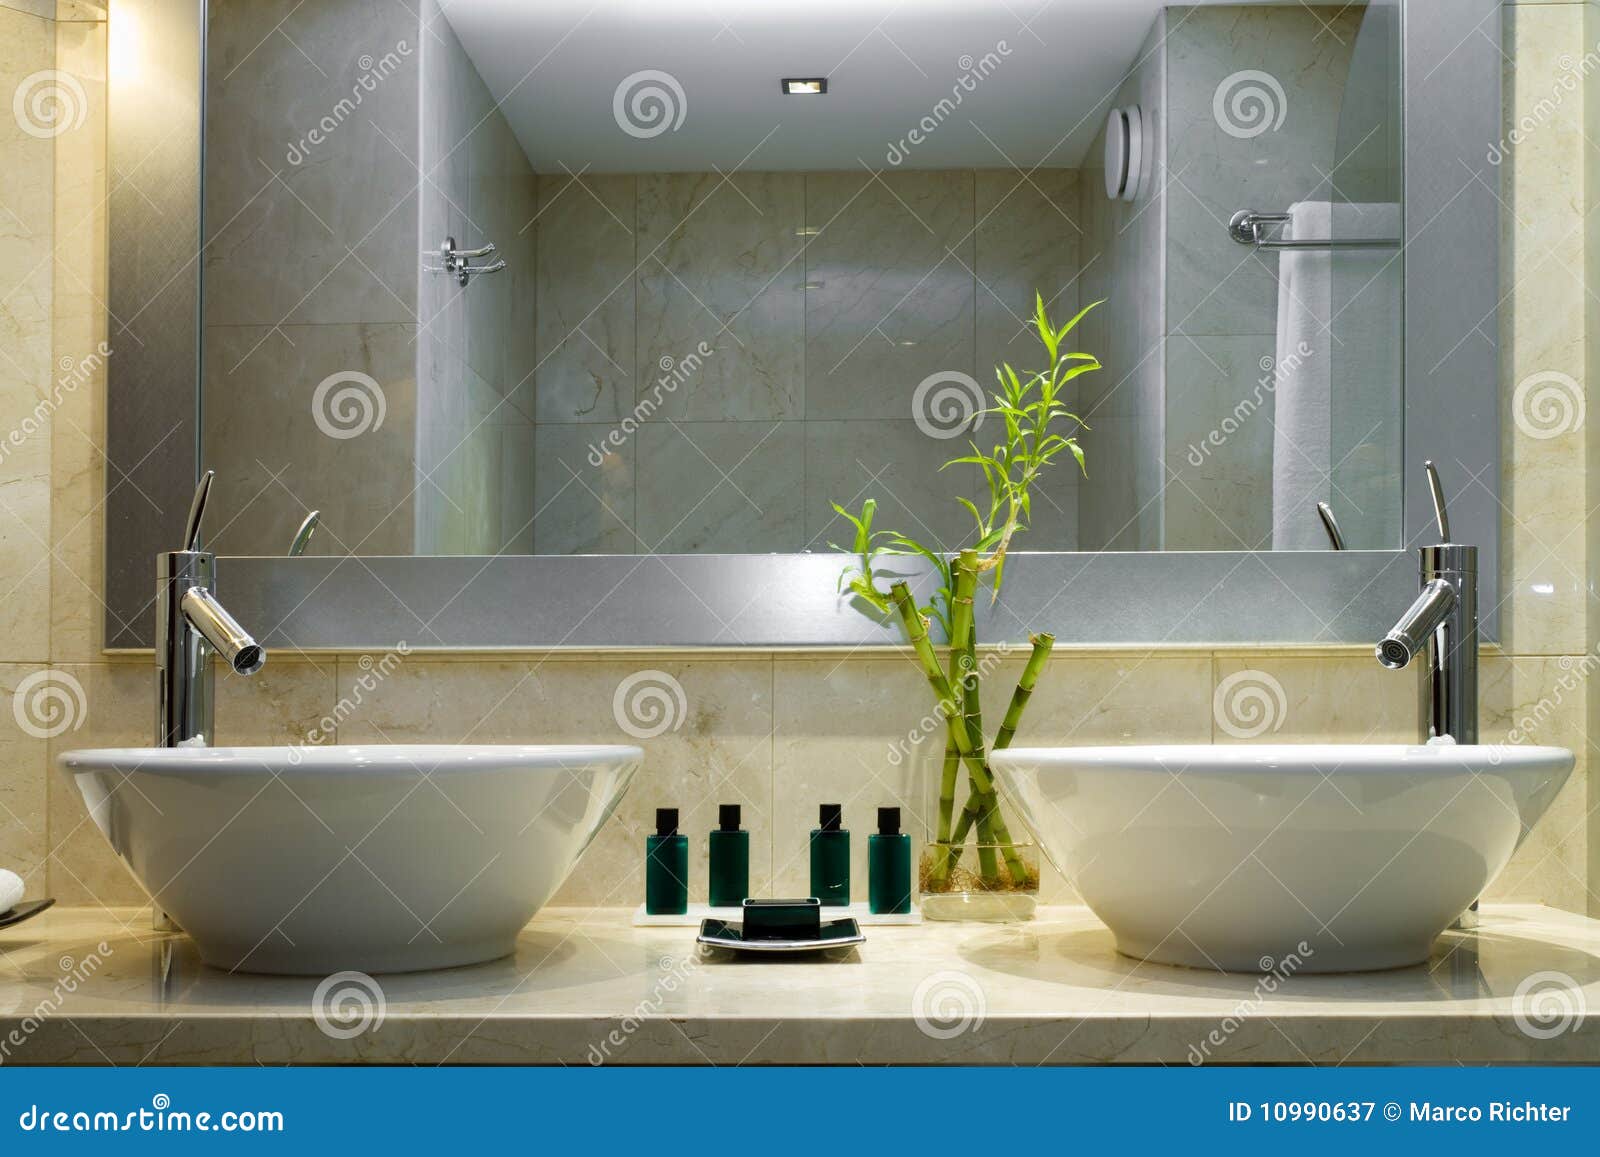 Modernes Badezimmer stockbild. Bild von inside, modern - 10990637